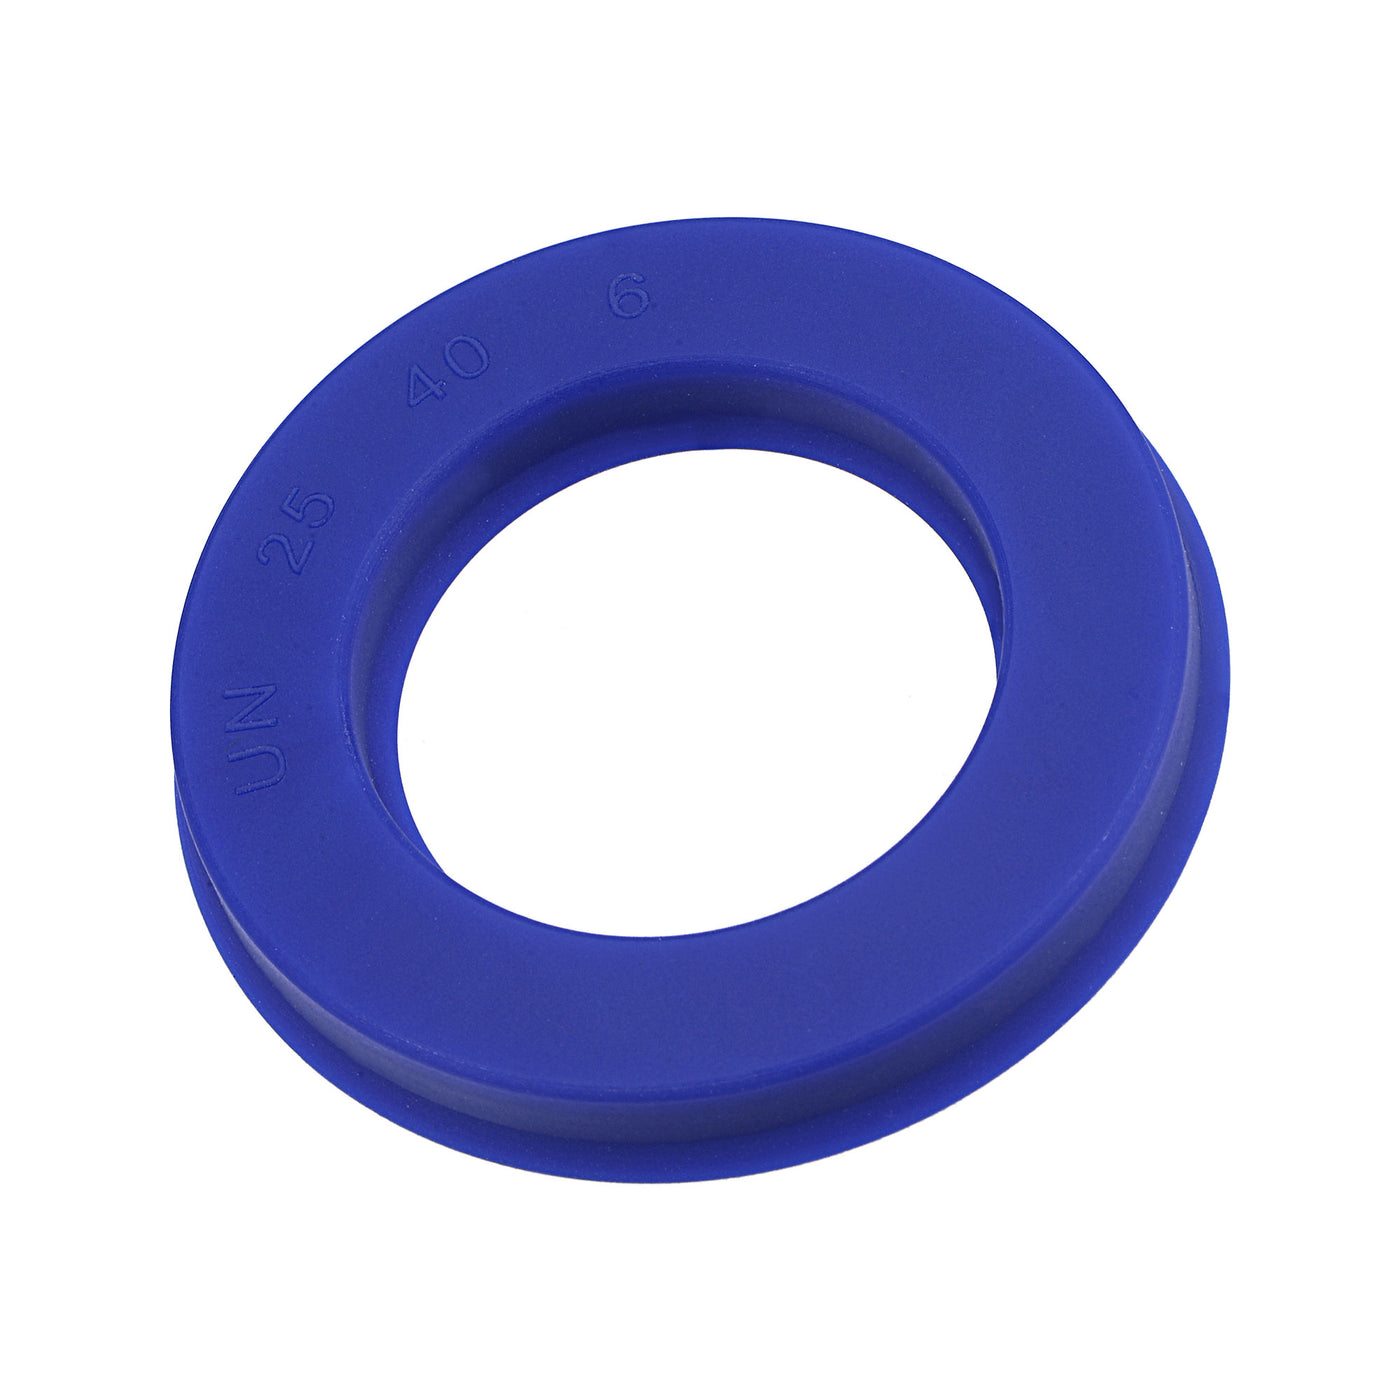 Harfington UN Radial Shaft Seal 25mm ID x 40mm OD x 6mm Width PU Oil Seal, Blue Pack of 5